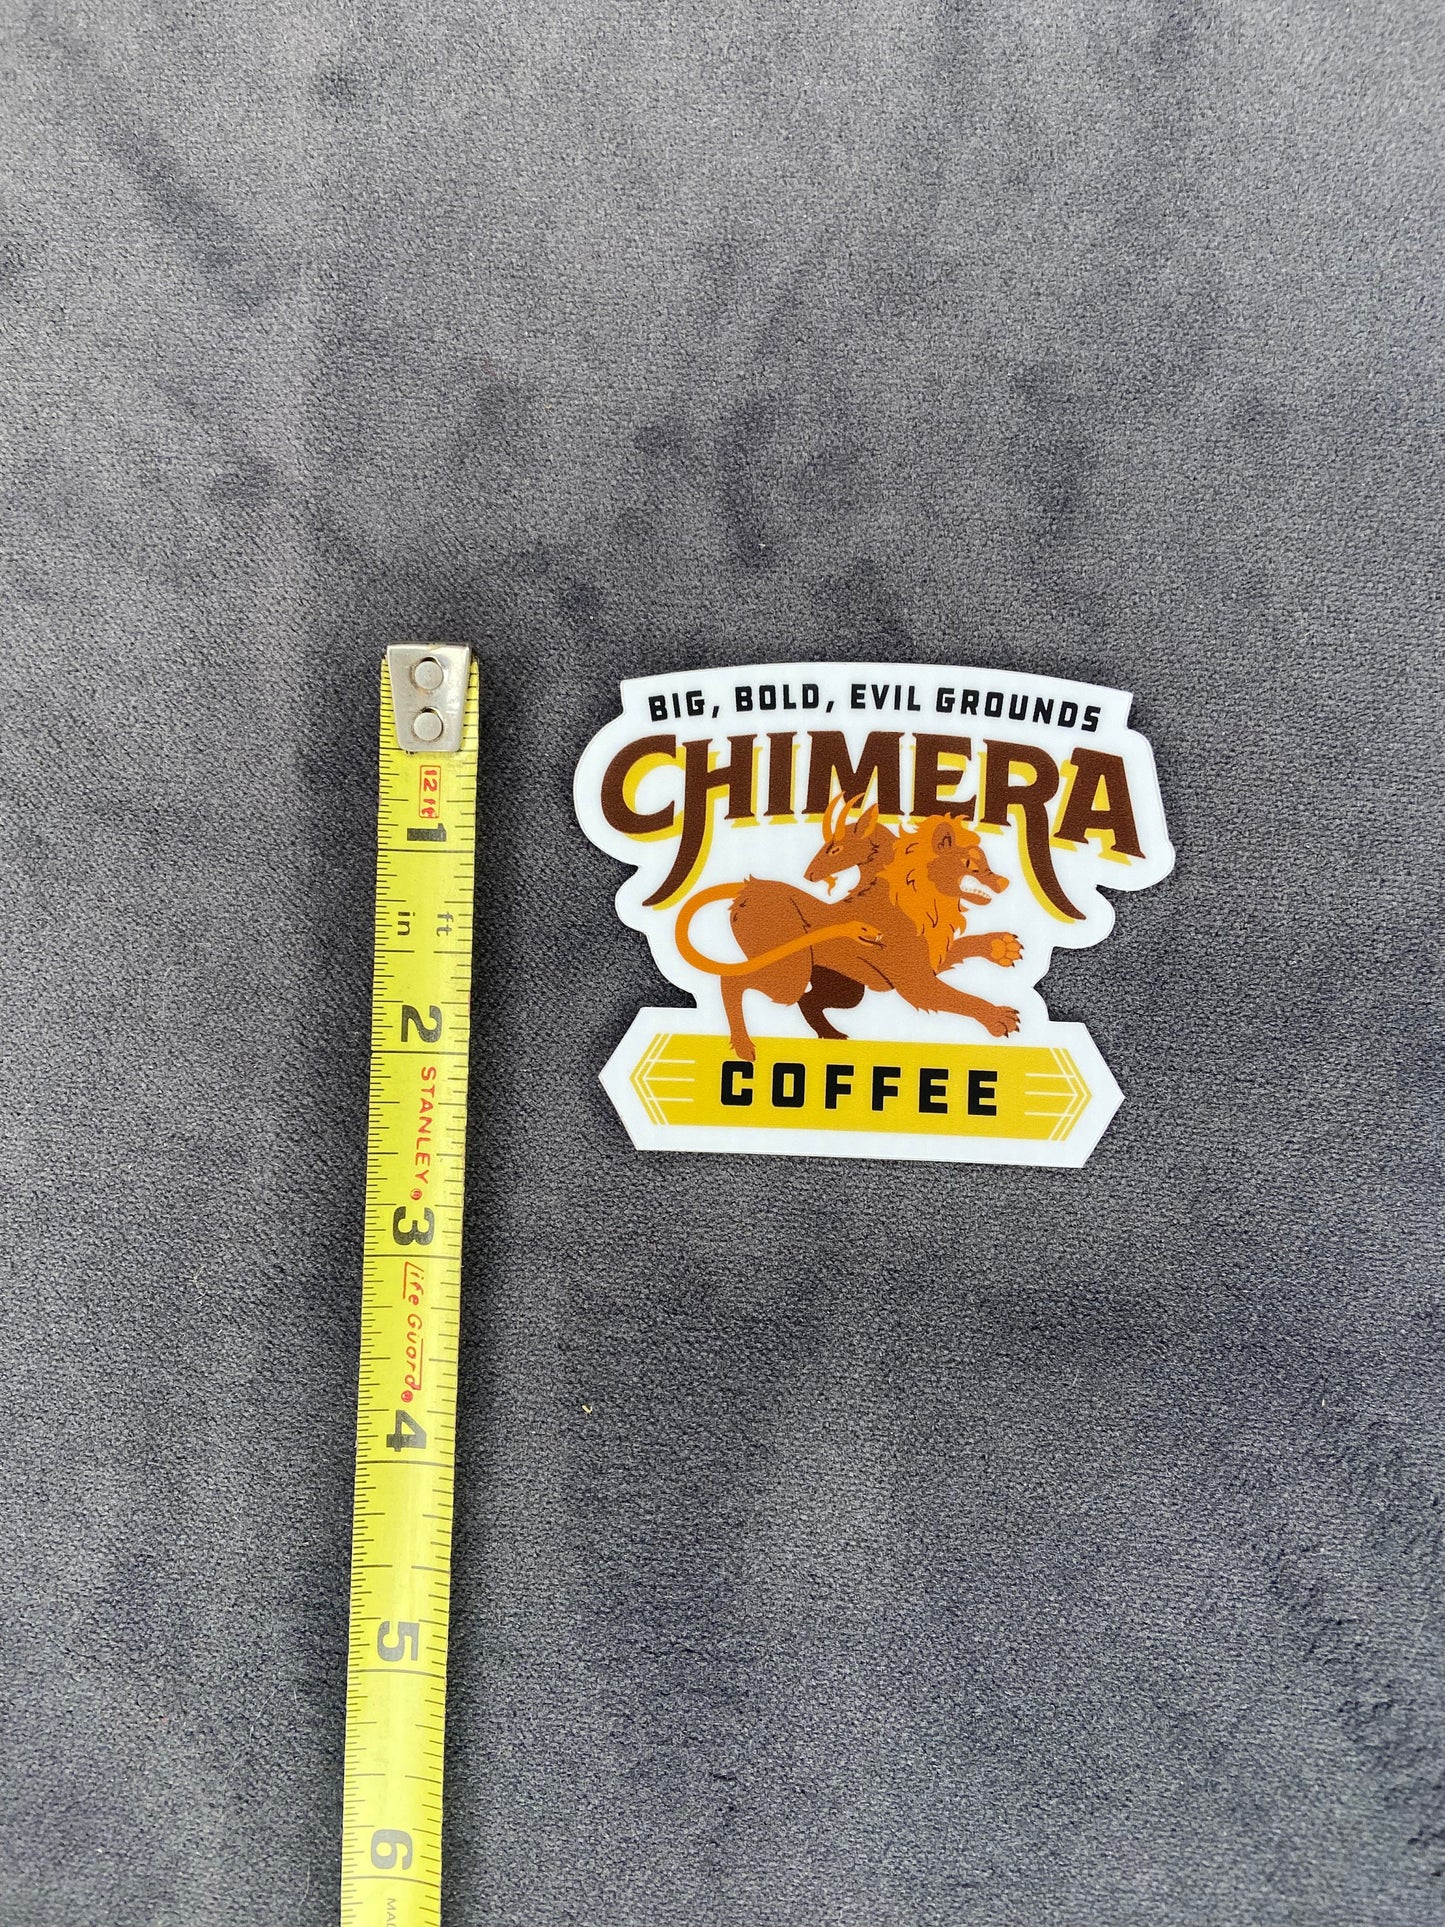 Chimera Coffee Sticker—DnD Gift, Dungeons & Dragons, Pathfinder, TTRPG